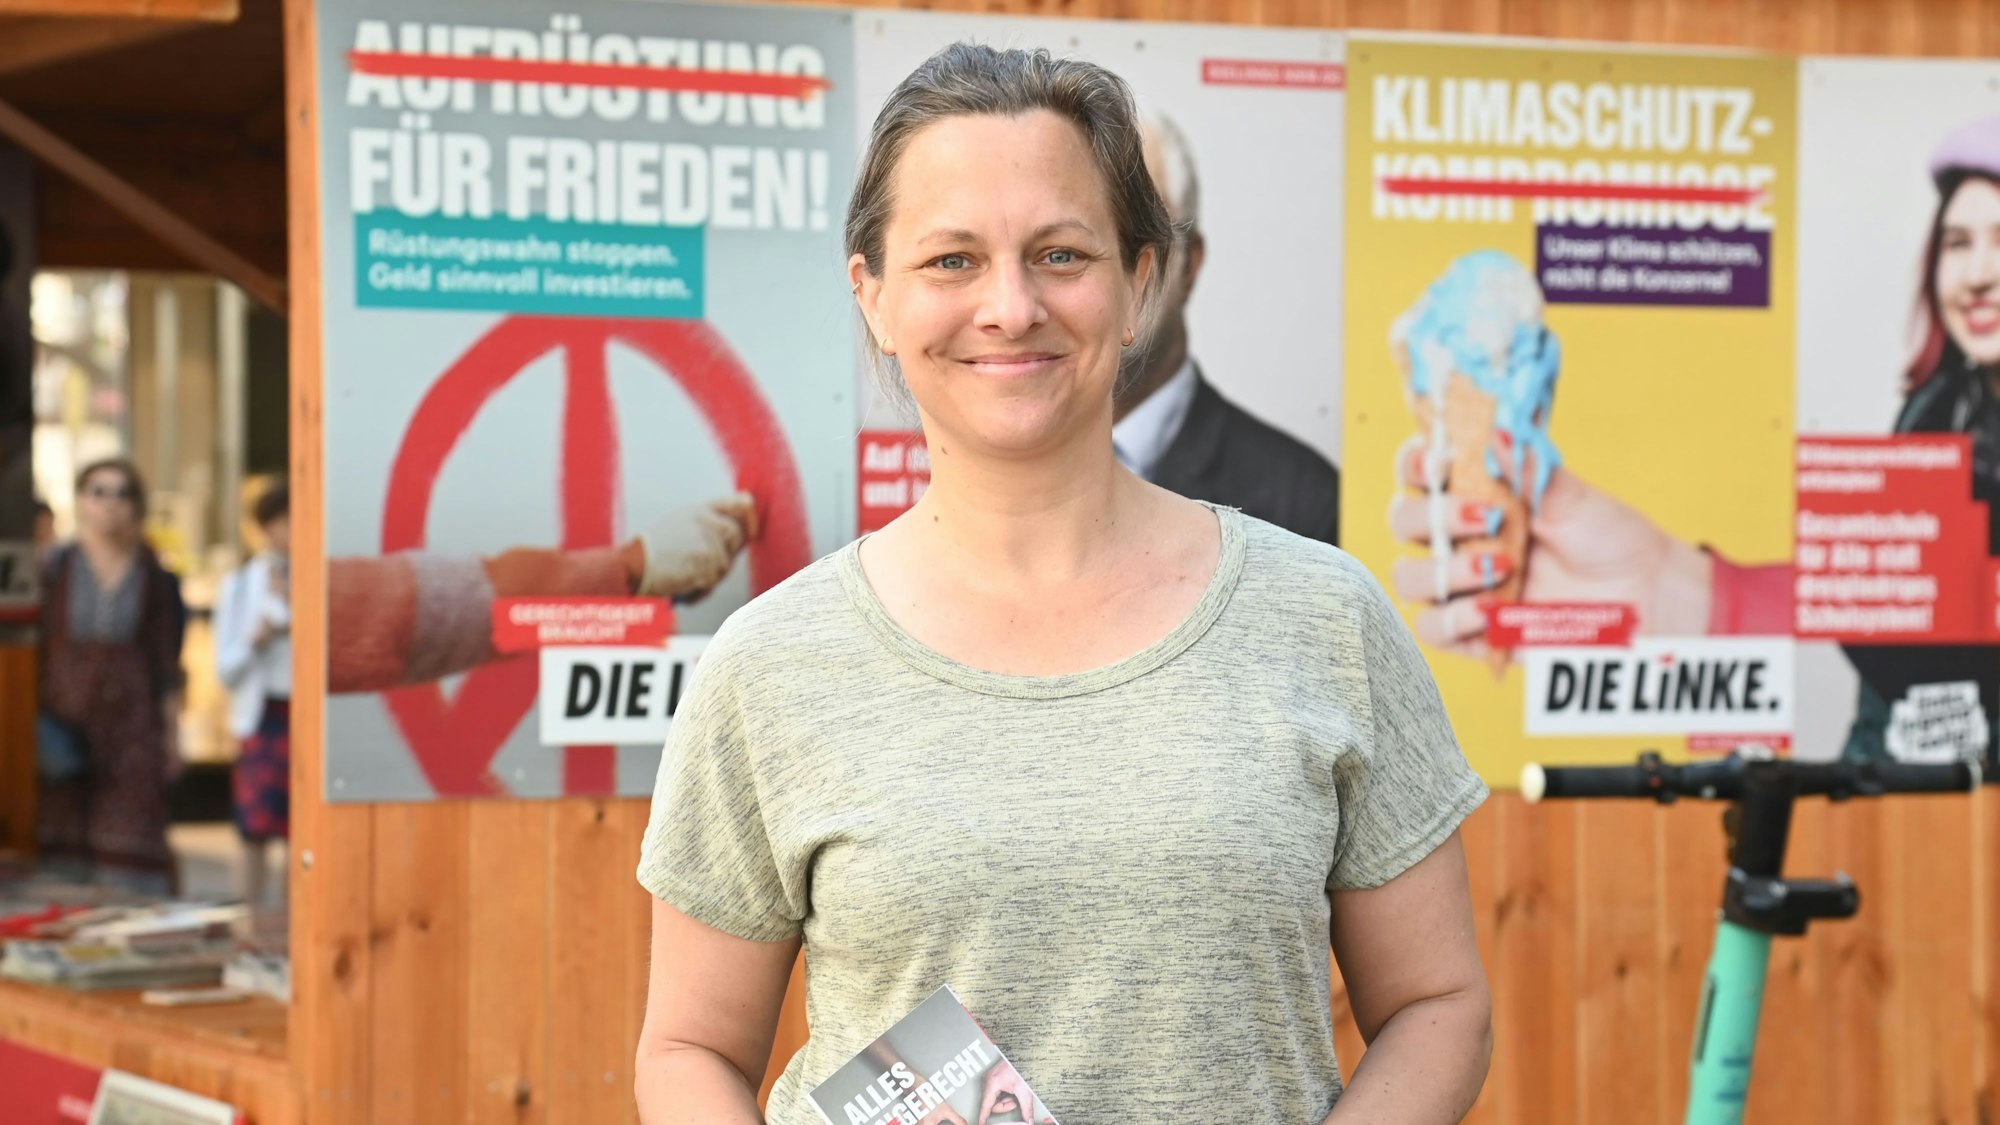 Nicolin Gabrysch während einer Wahlkampfveranstaltung zurLandtagswahl 2022.